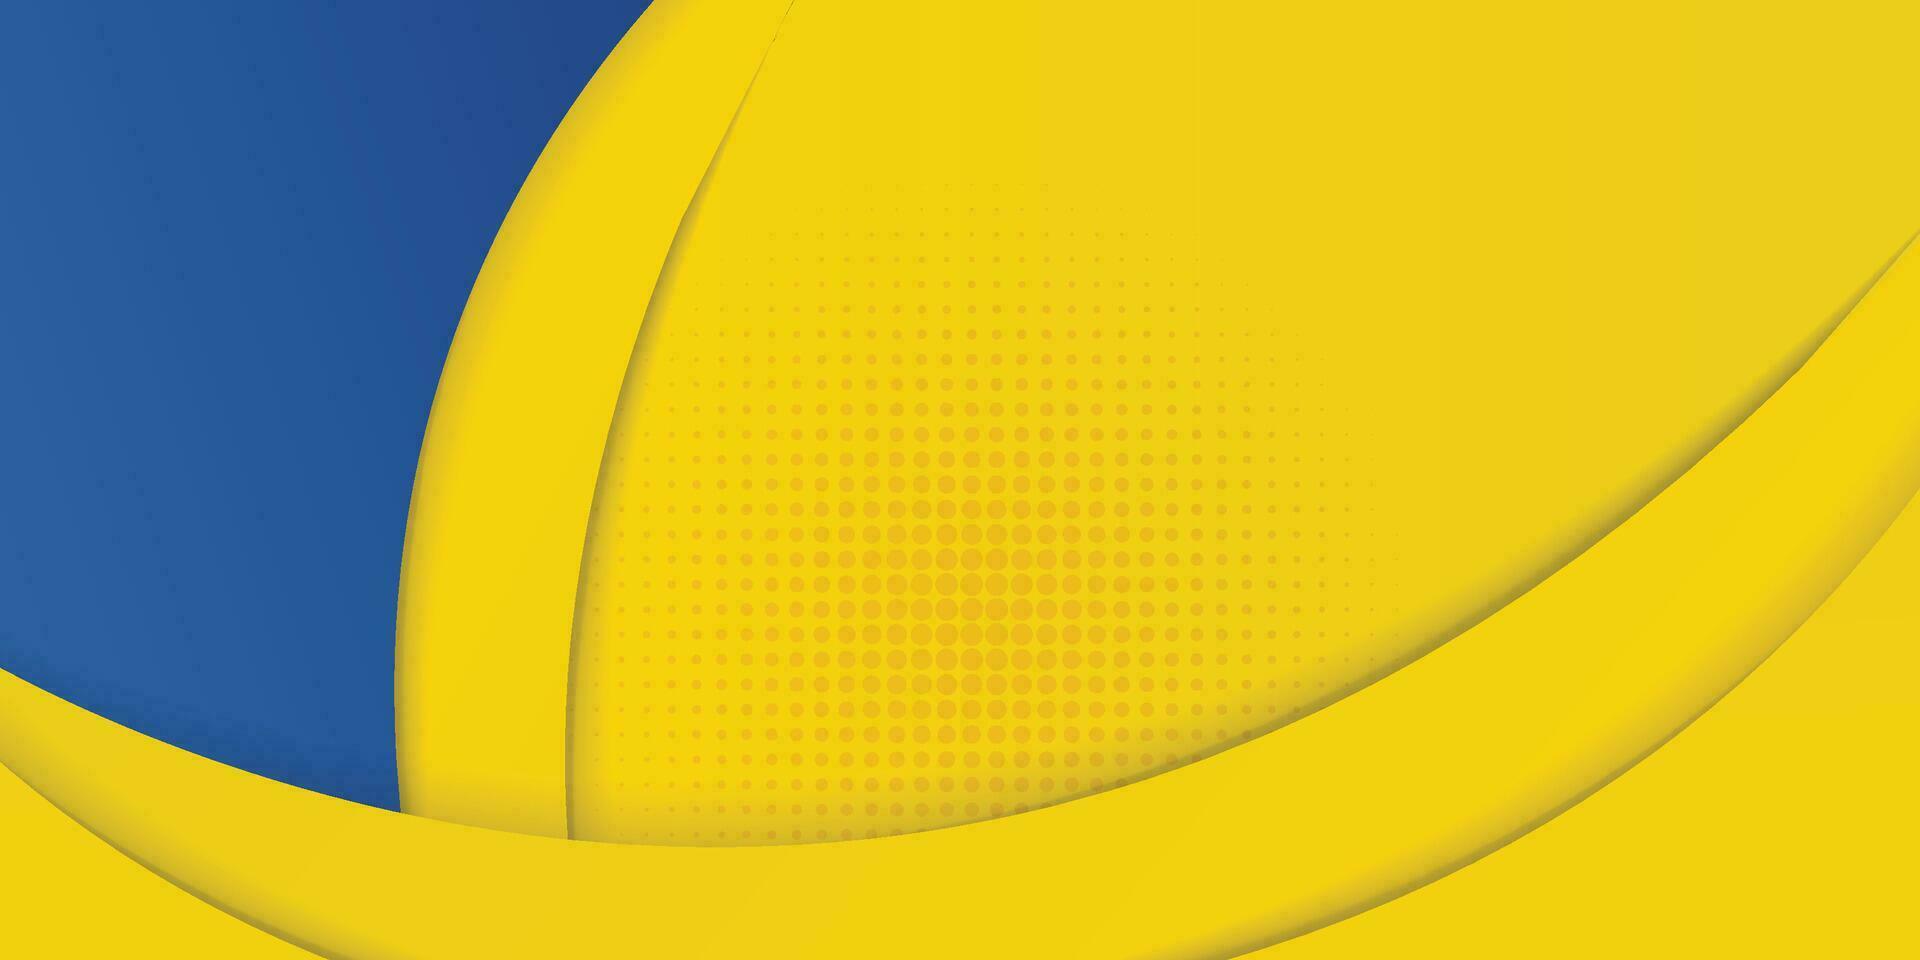 abstract geel en blauw meetkundig kromme overlappen laag achtergrond met halftone dots decoratie. modern horizontaal banier sjabloon ontwerp. pak voor omslag, kop, poster, banier, website, bedrijf vector